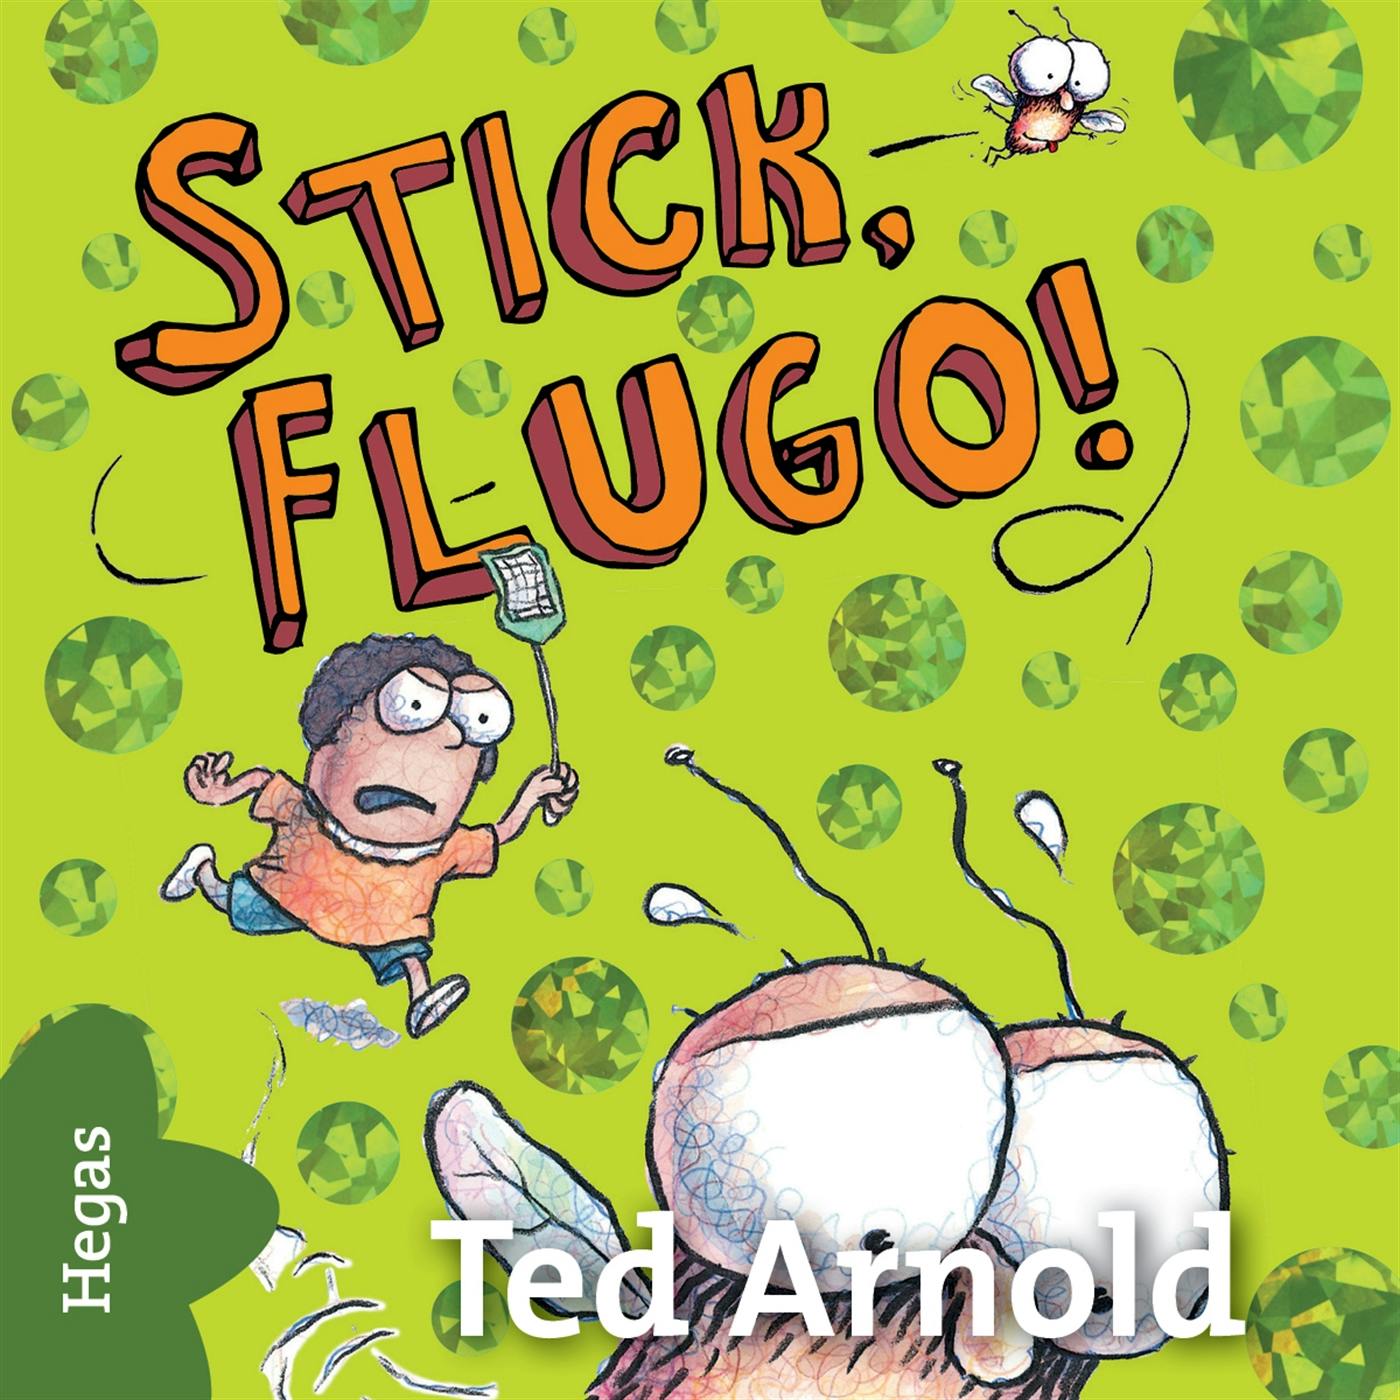 Stick, Flugo! - undefined